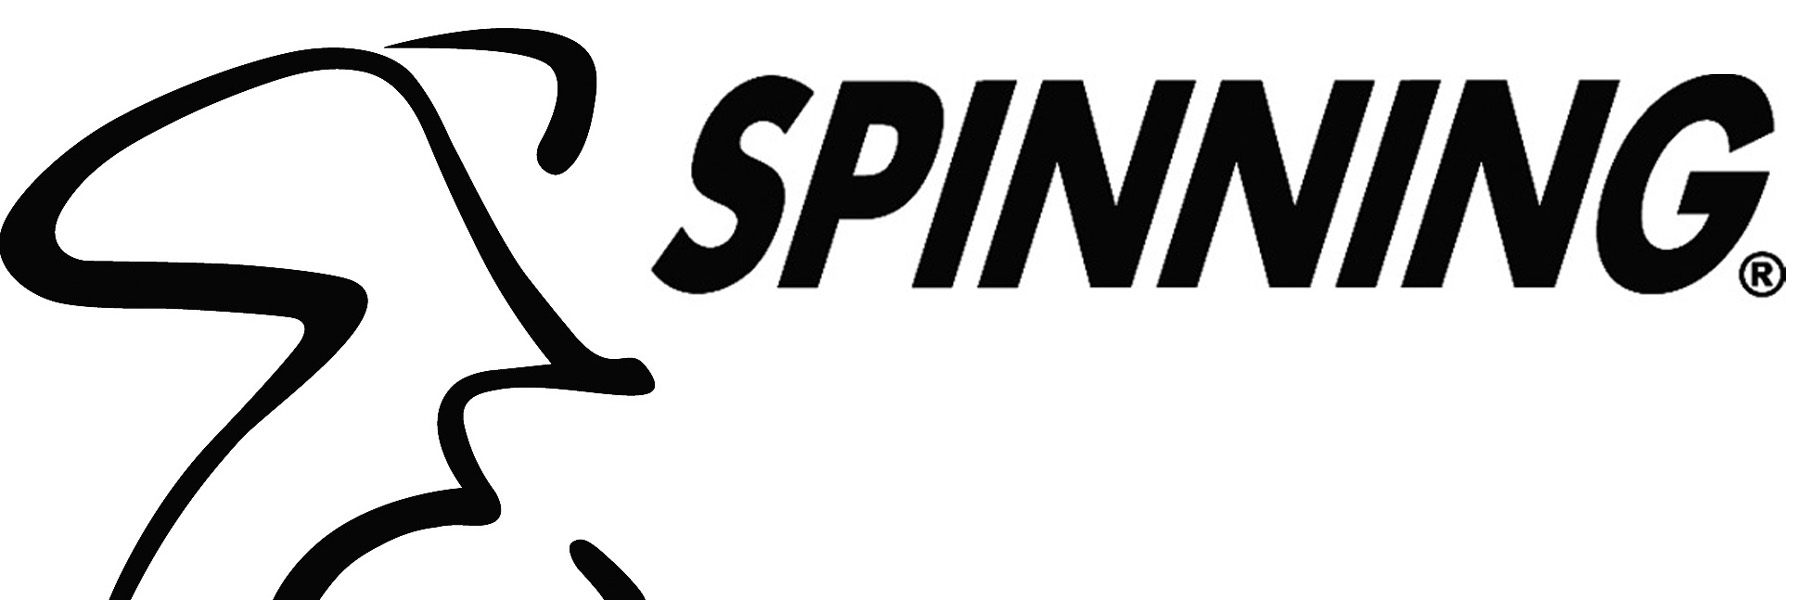 Www spinning com. Spinner логотип. Спиннинг лого. Логотип Spinning Fishing. Эмблема фирмы производителя спиннинга.